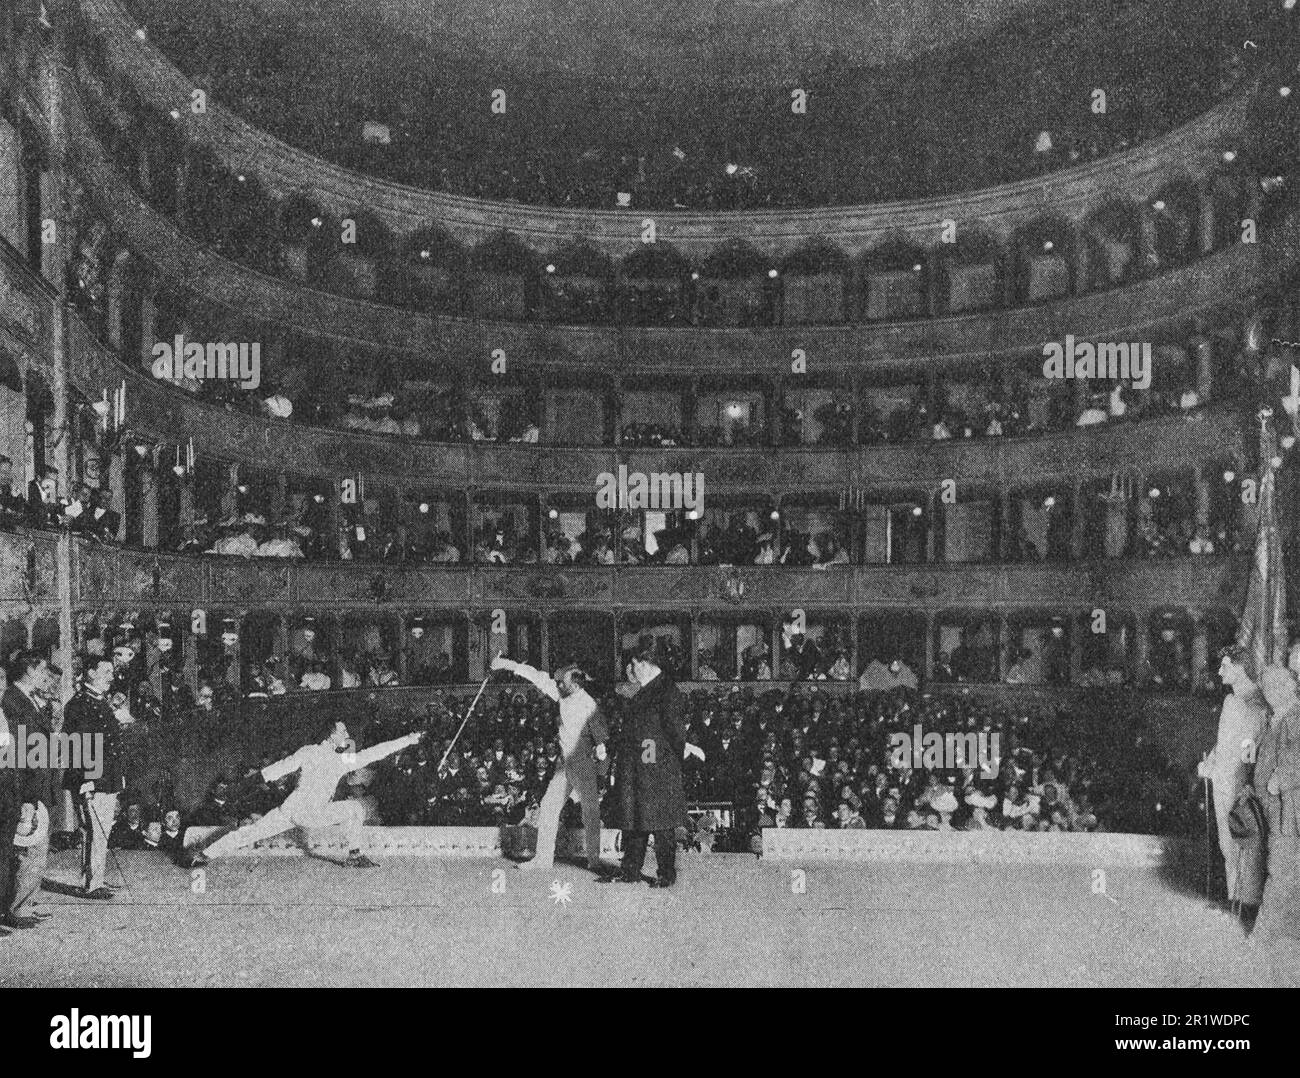 Concorso pubblico di scherma a Venezia. Foto dall'inizio del 20th ° secolo. Foto Stock